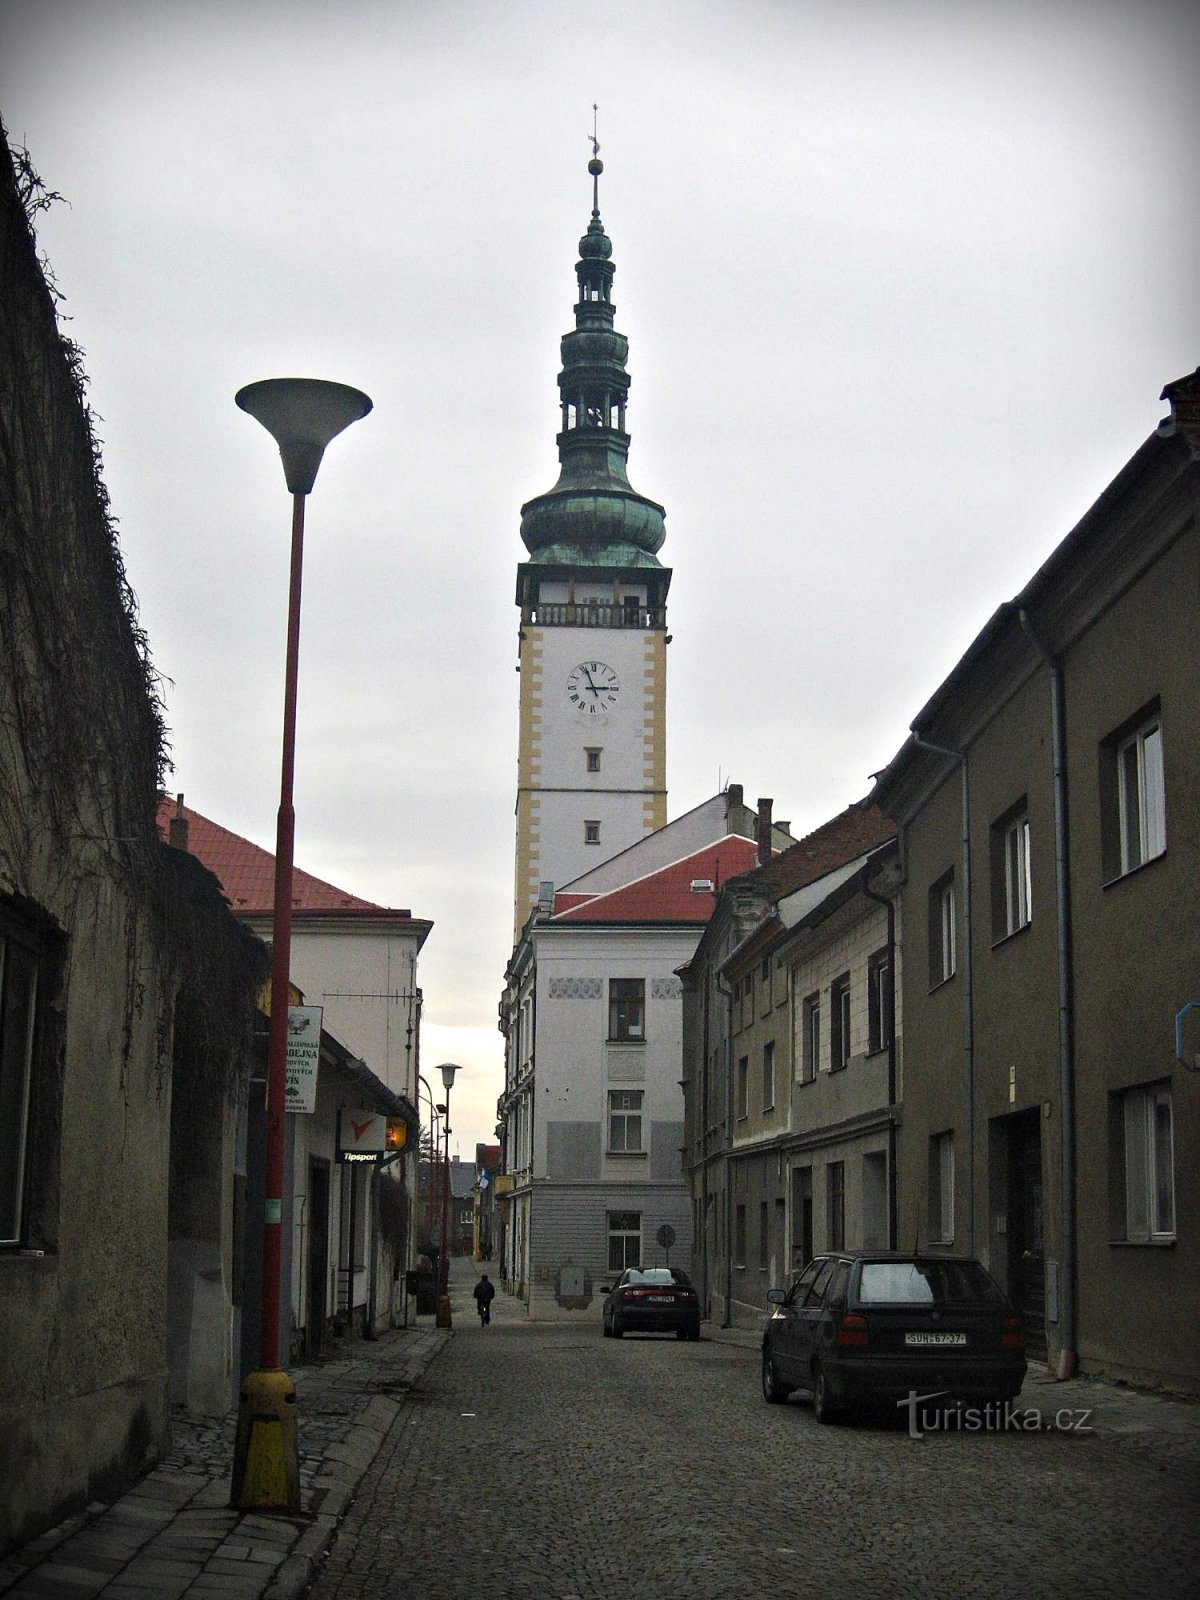 Litovel városháza és tornya